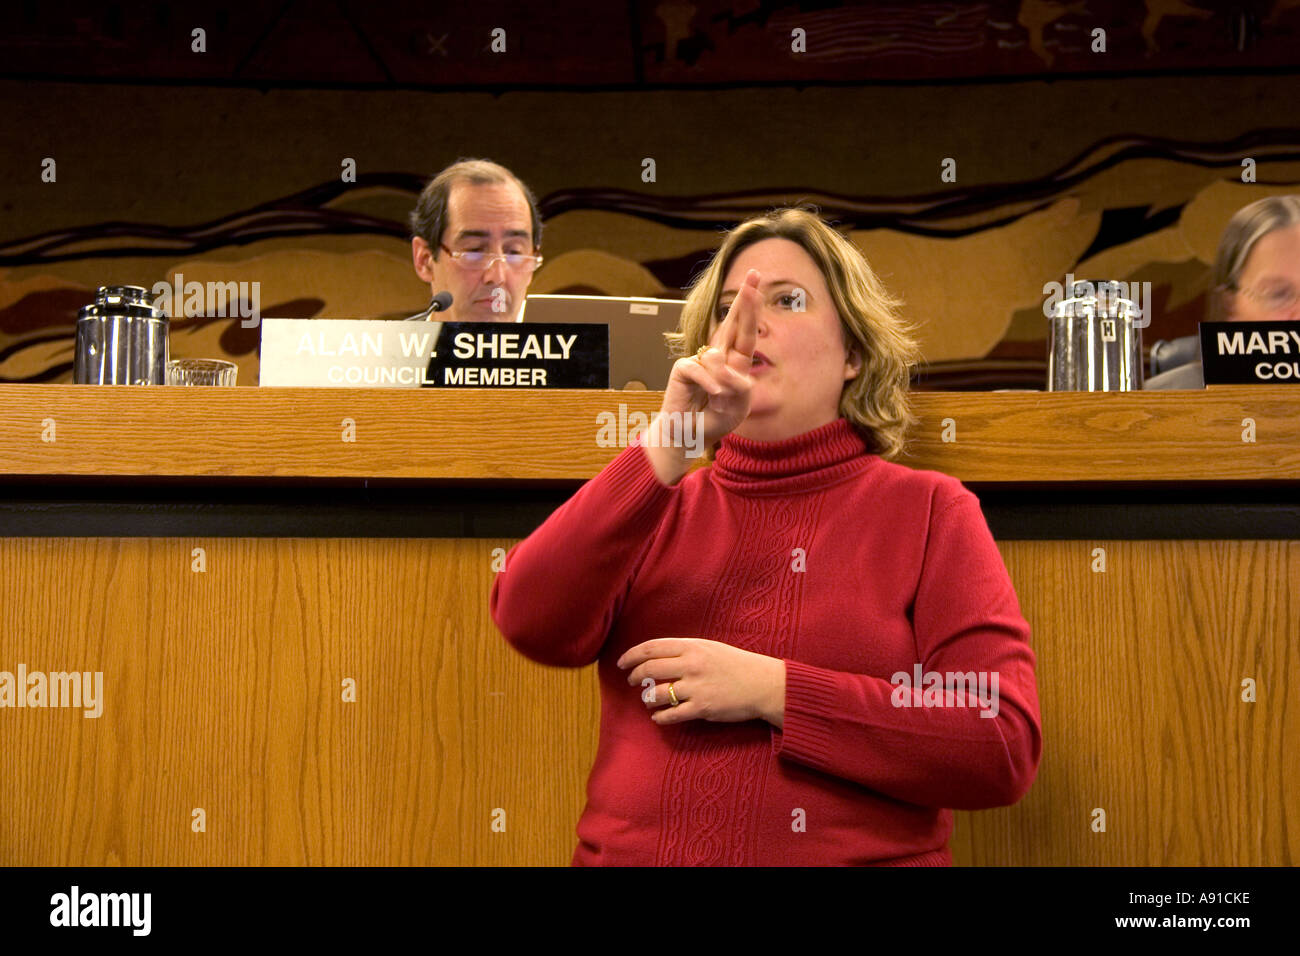 La donna si traduce nel linguaggio dei segni in occasione di una riunione di Boise City Council, Idaho. Foto Stock